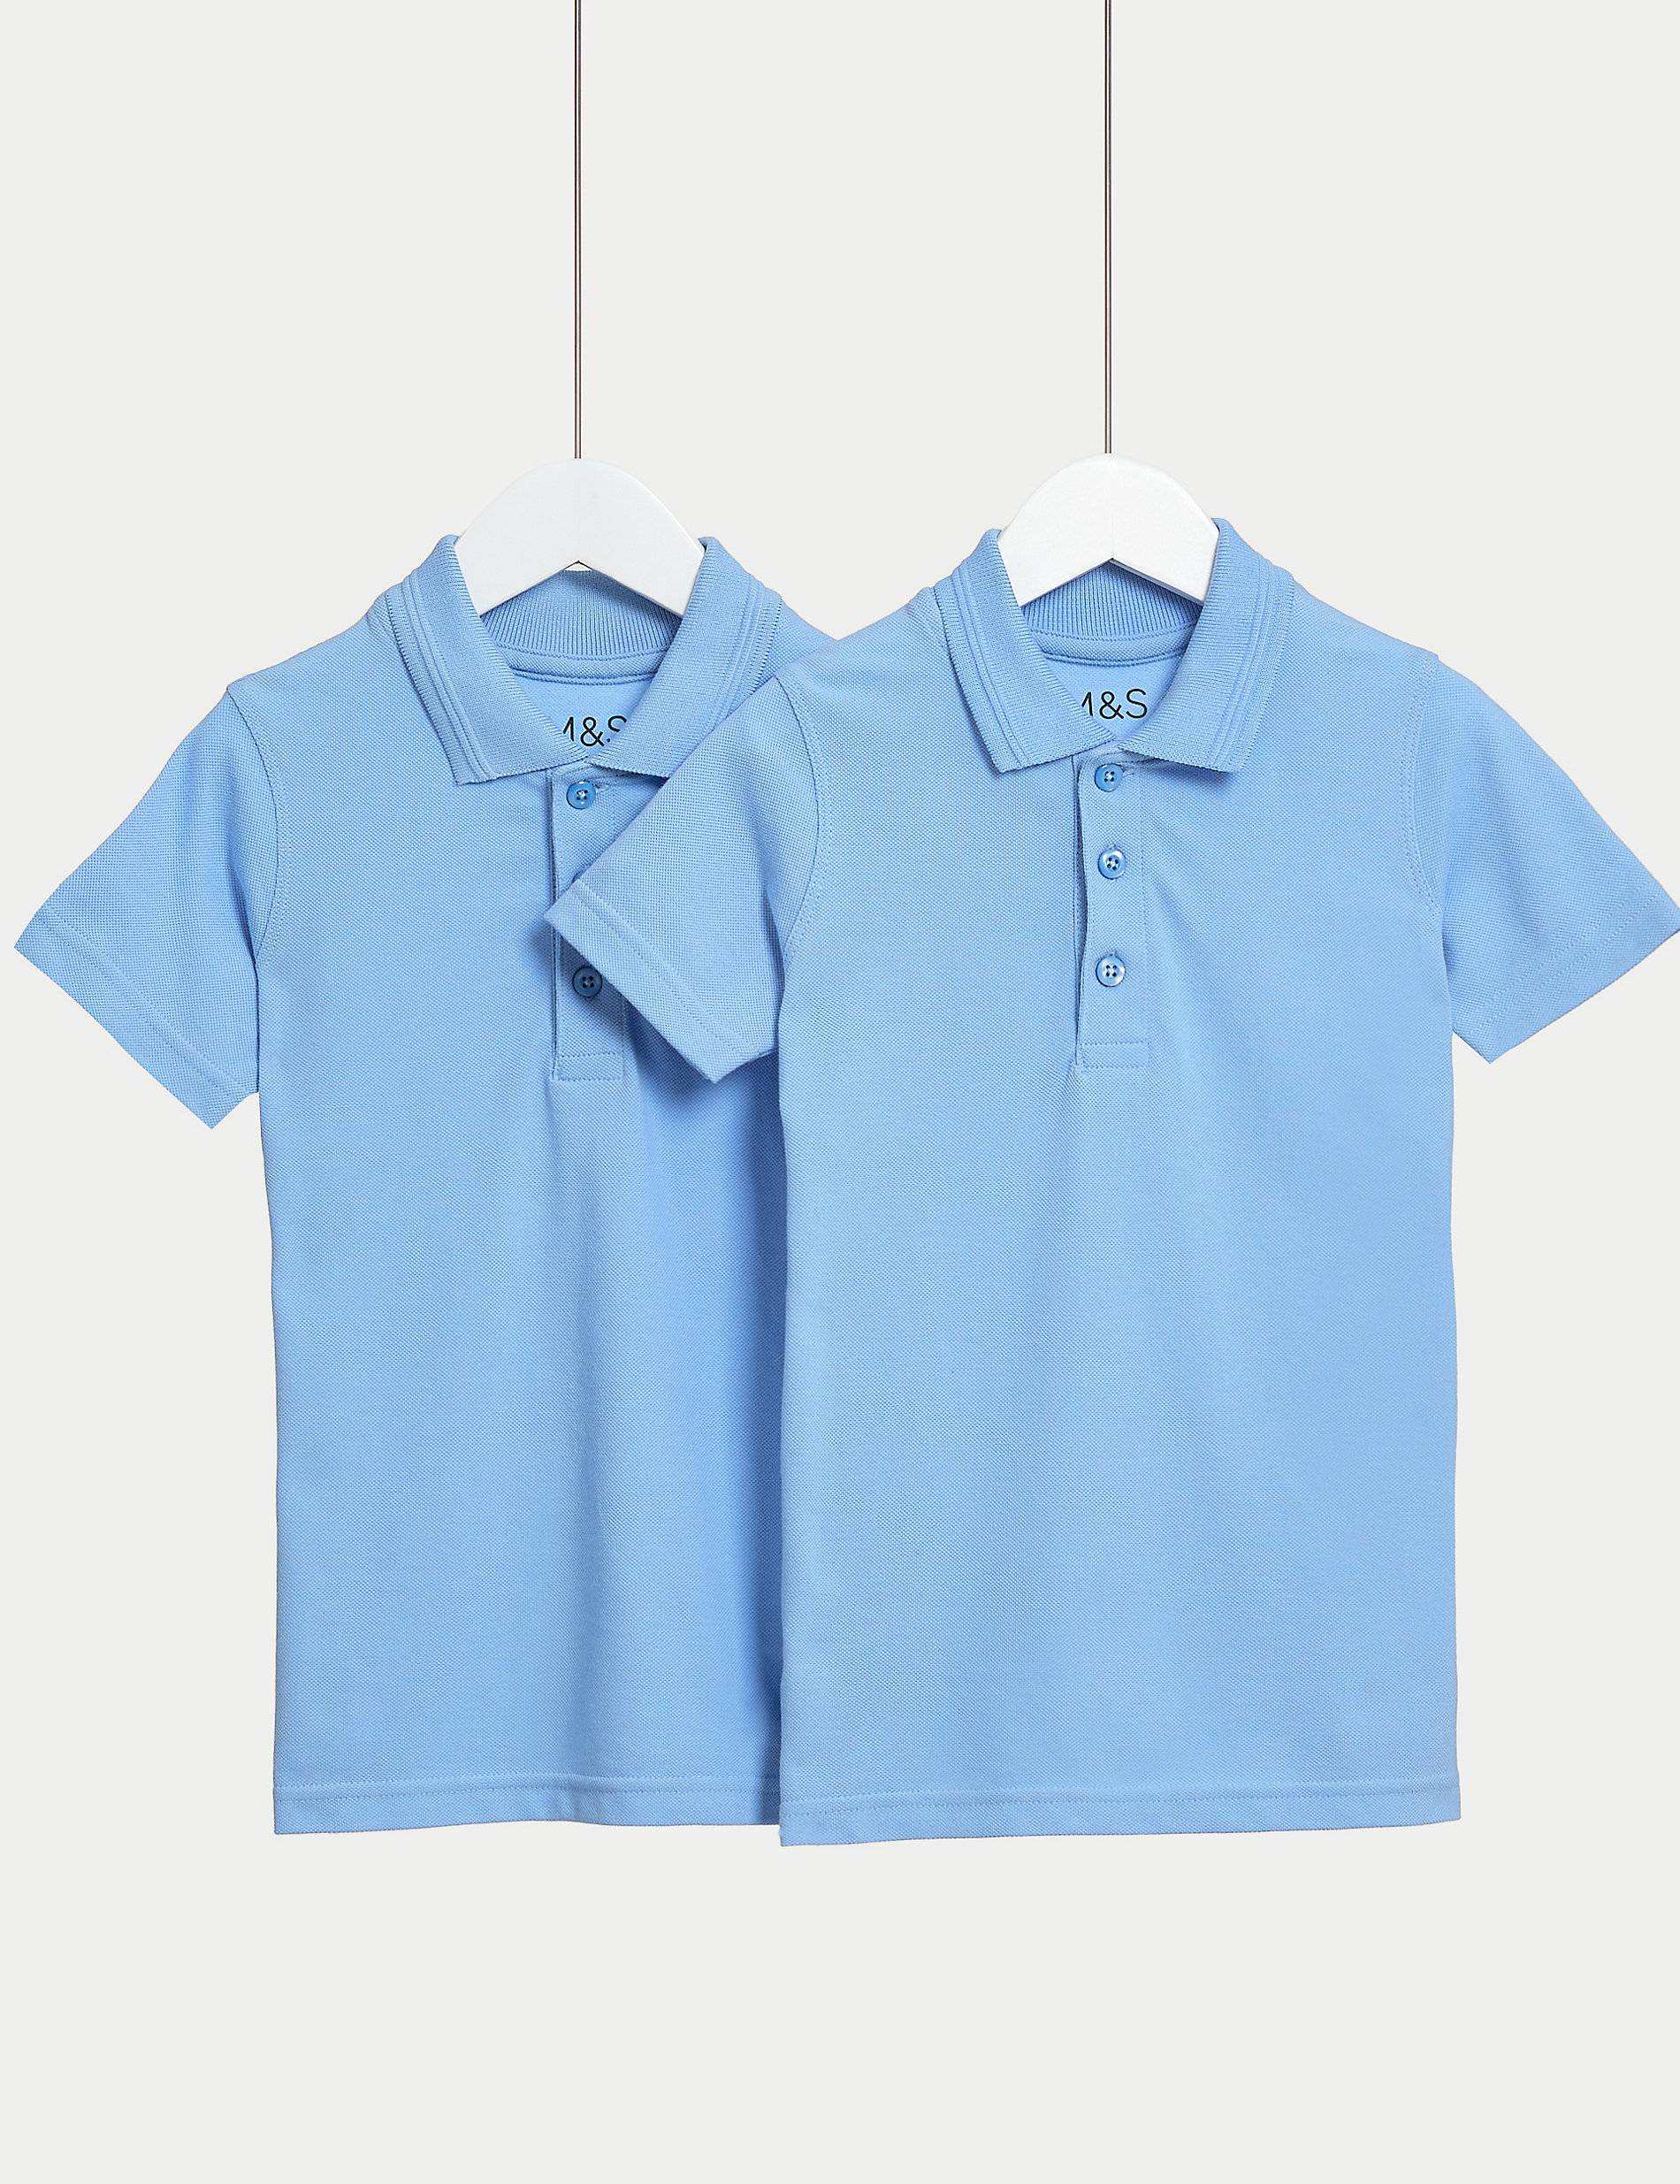 Σχολικές μπλούζες πόλο για αγόρια με στενή εφαρμογή σε σετ των 2 (2-16 ετών)